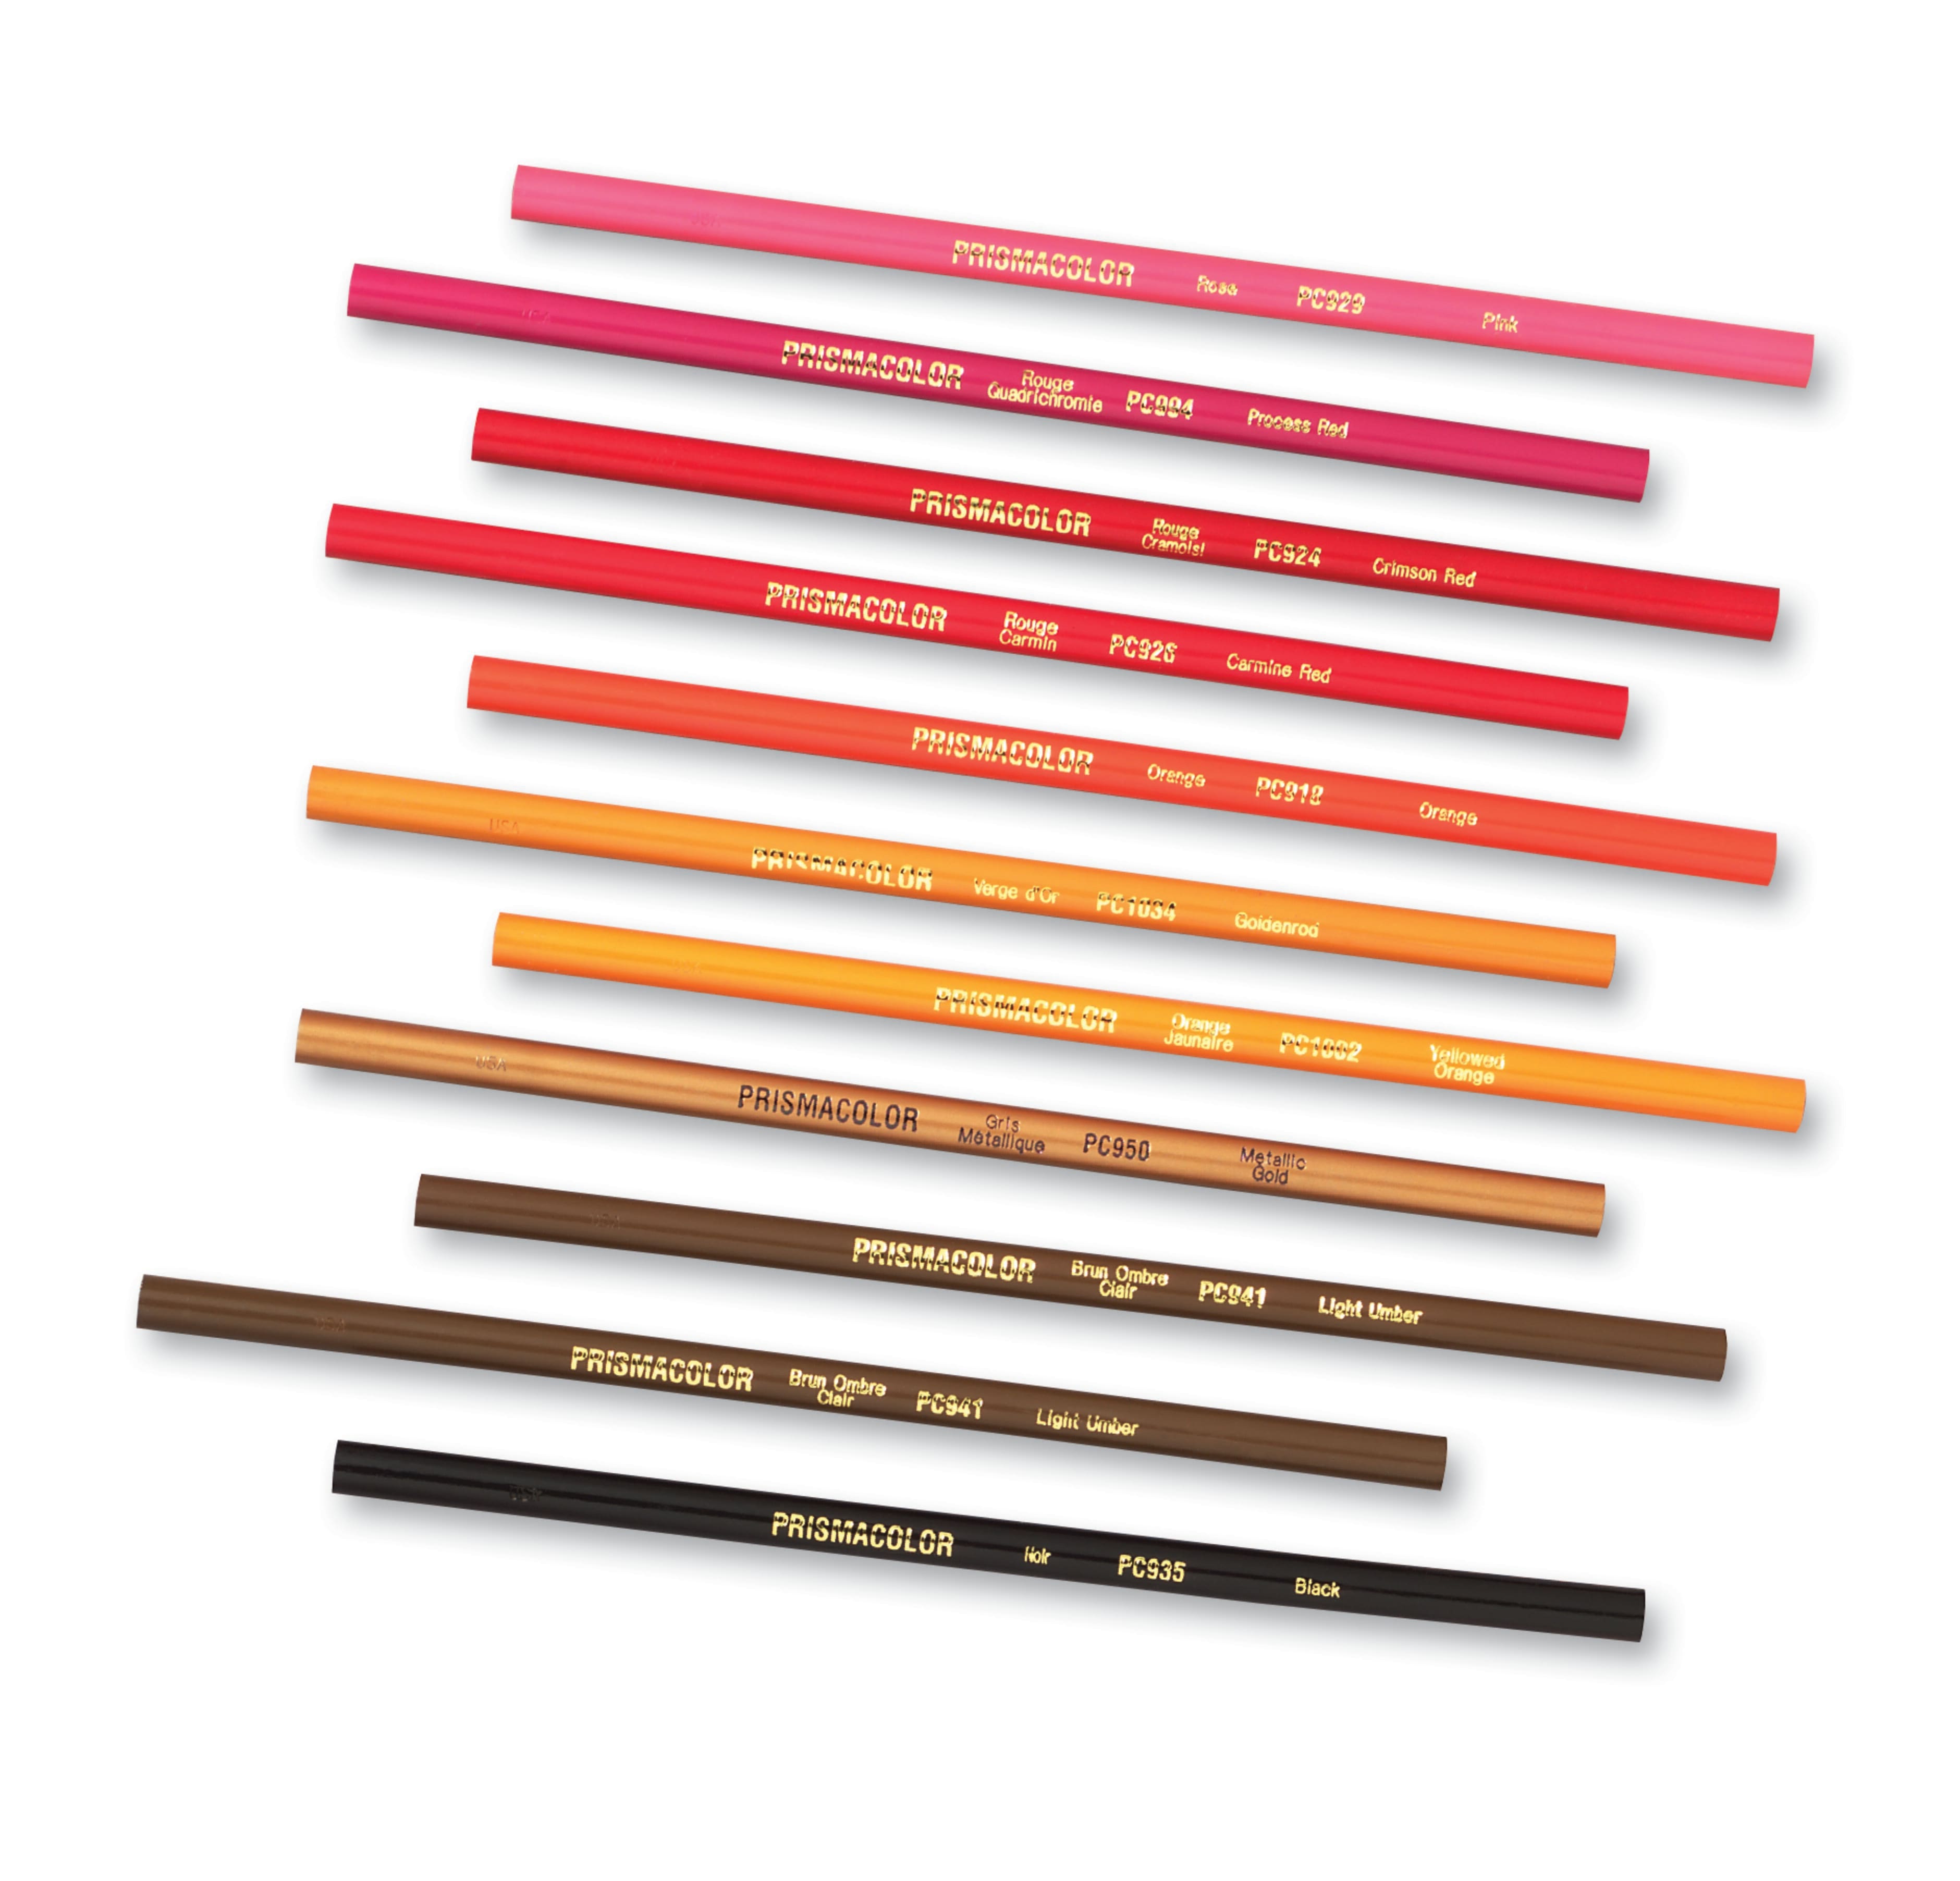 Prismacolor Premier Colored Pencils, Soft Core, 48 Pack